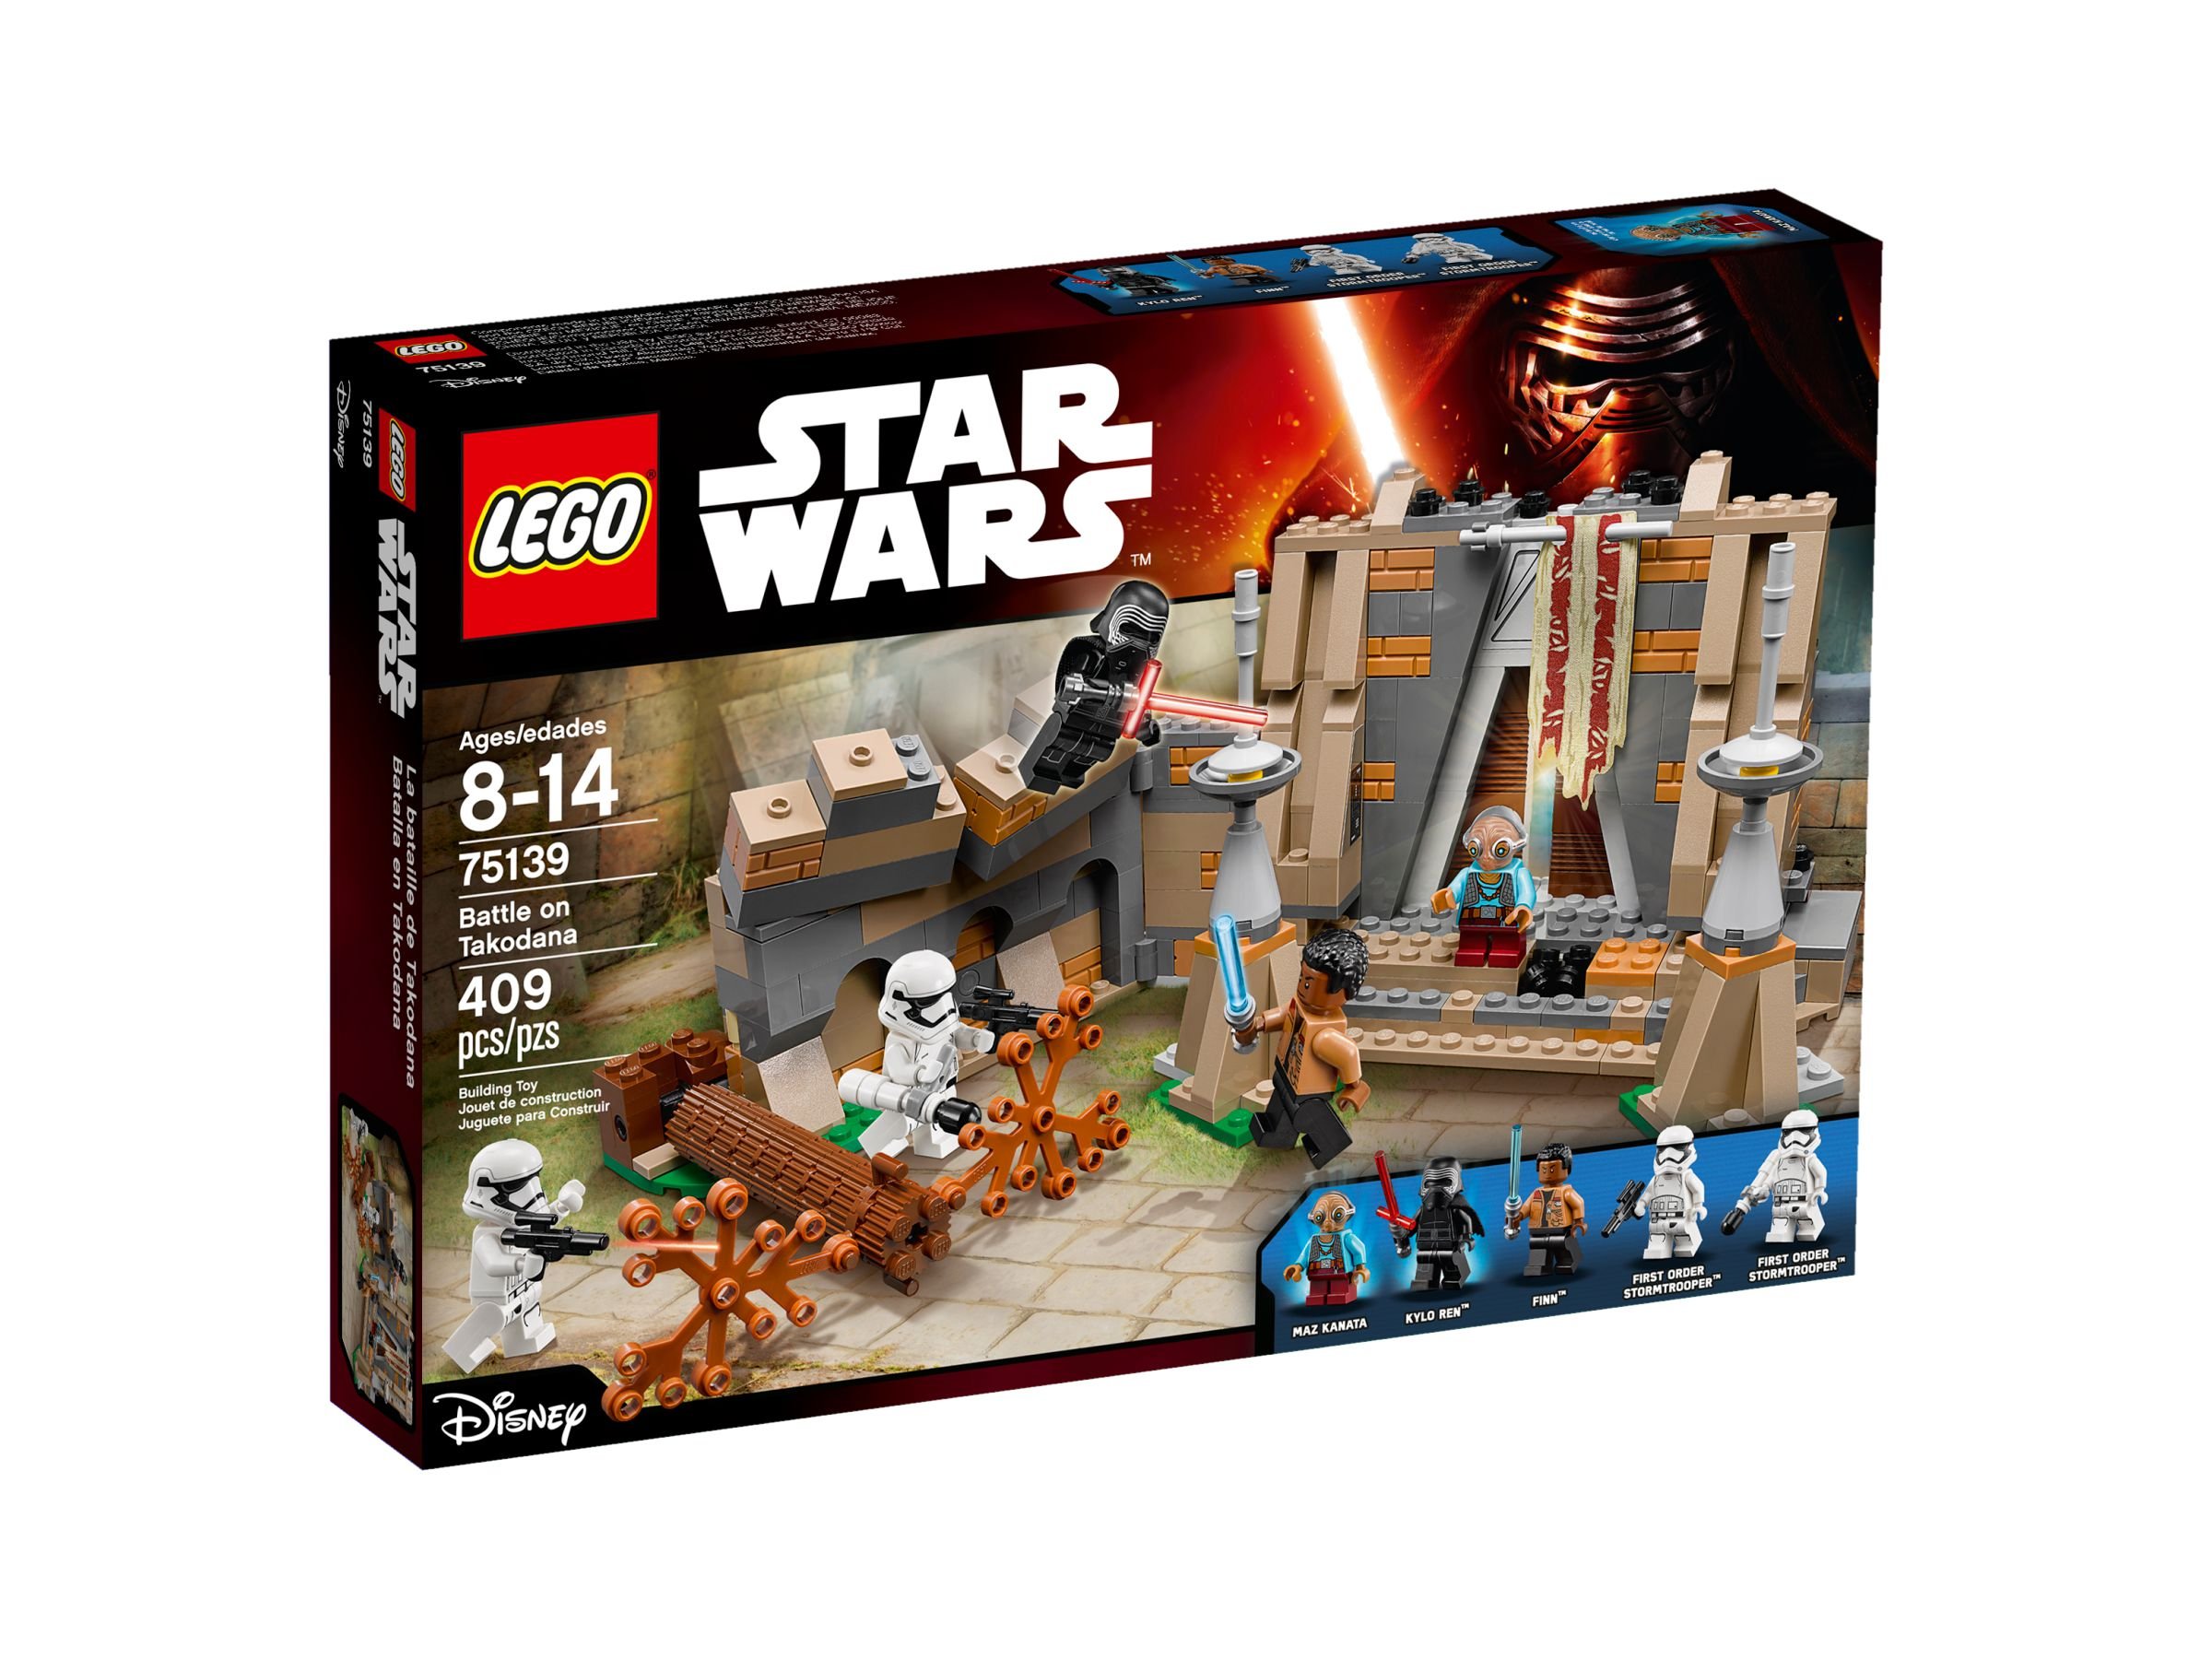 LEGO Star Wars 75139 Schlacht auf Takodana LEGO_75139_alt1.jpg